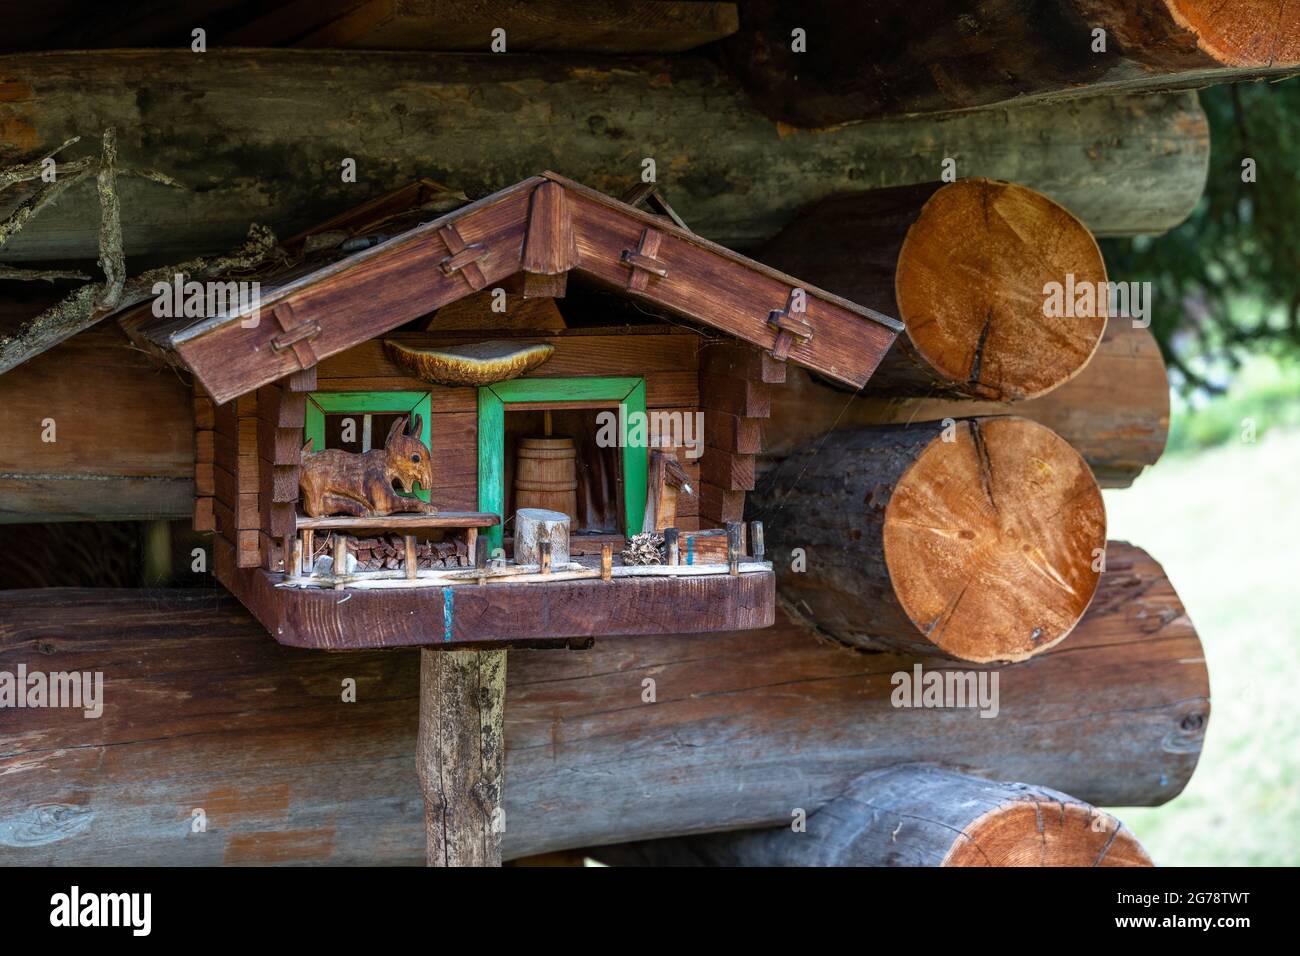 Europa, Österreich, Tirol, Ötztal Alpen, Ötztal, Längenfeld, kunstvolle Holzschnitzerei auf einer Heuscheune auf der Unteren Hemerach Alm Stockfoto